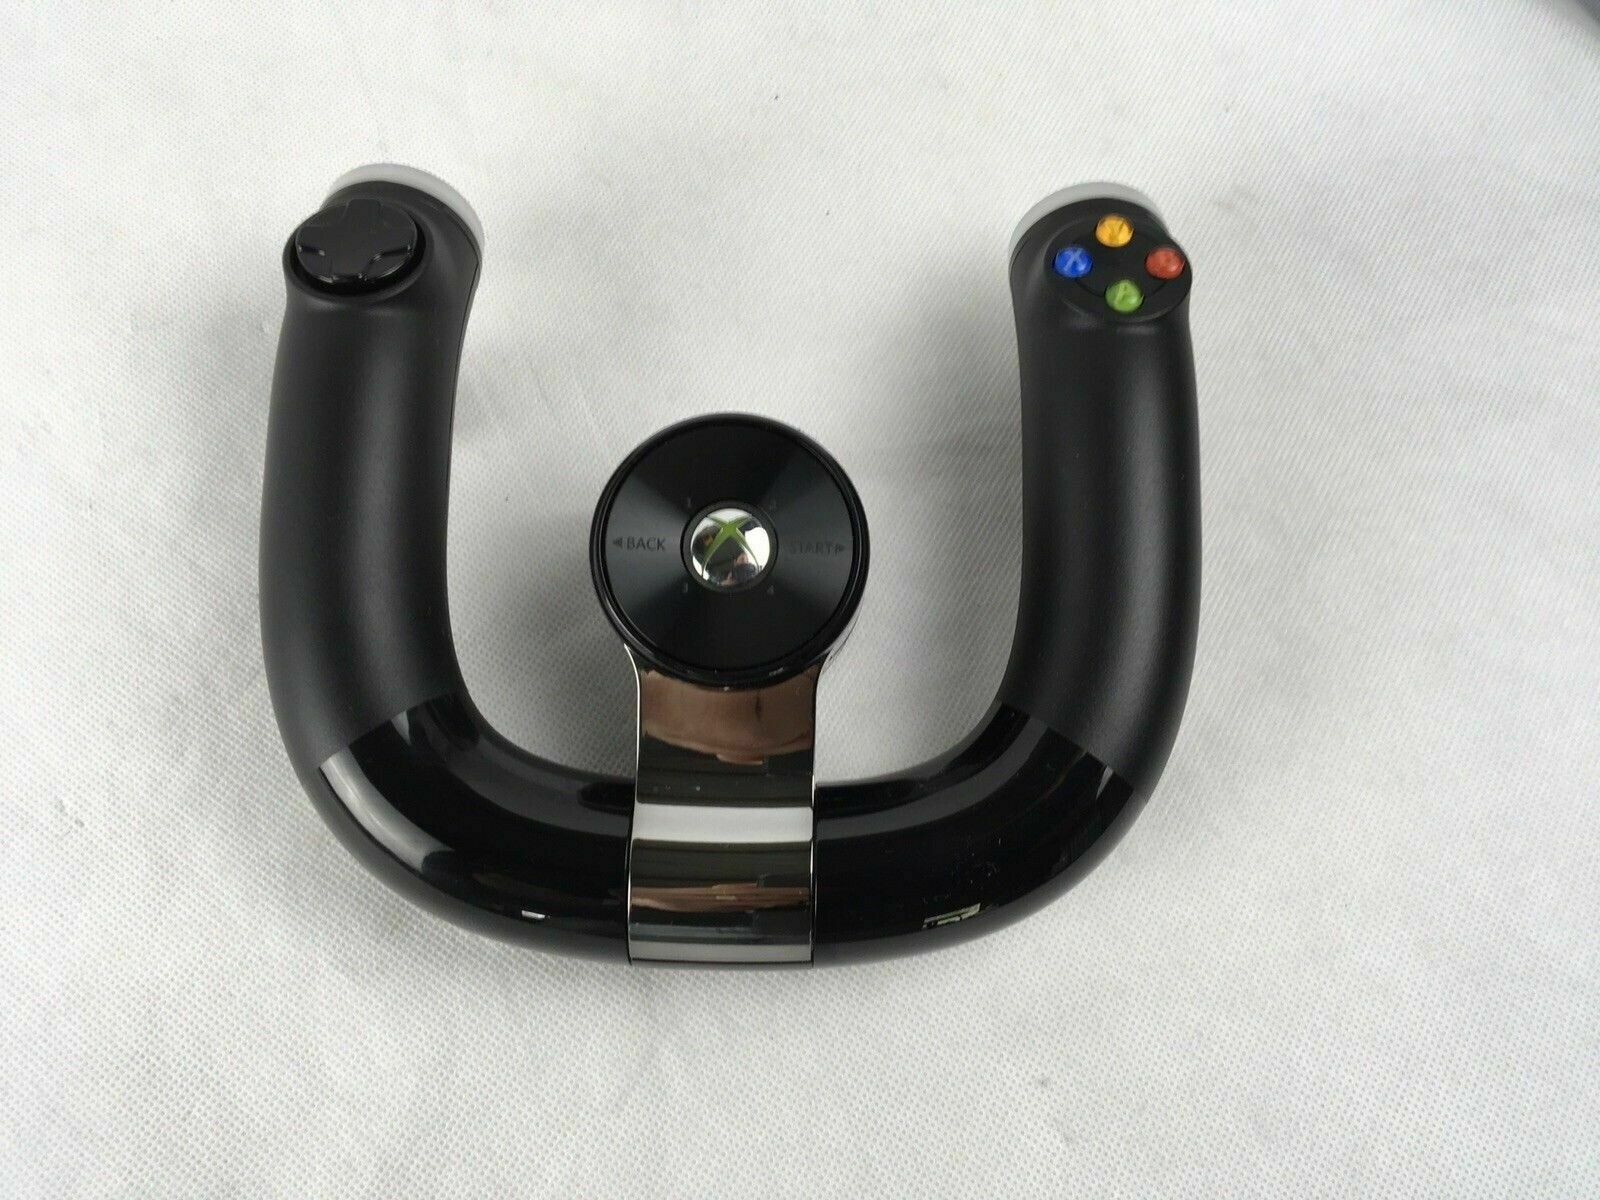 Microsoft Xbox 360 Wireless Speed Wheel Steering Wheel - Model 1470